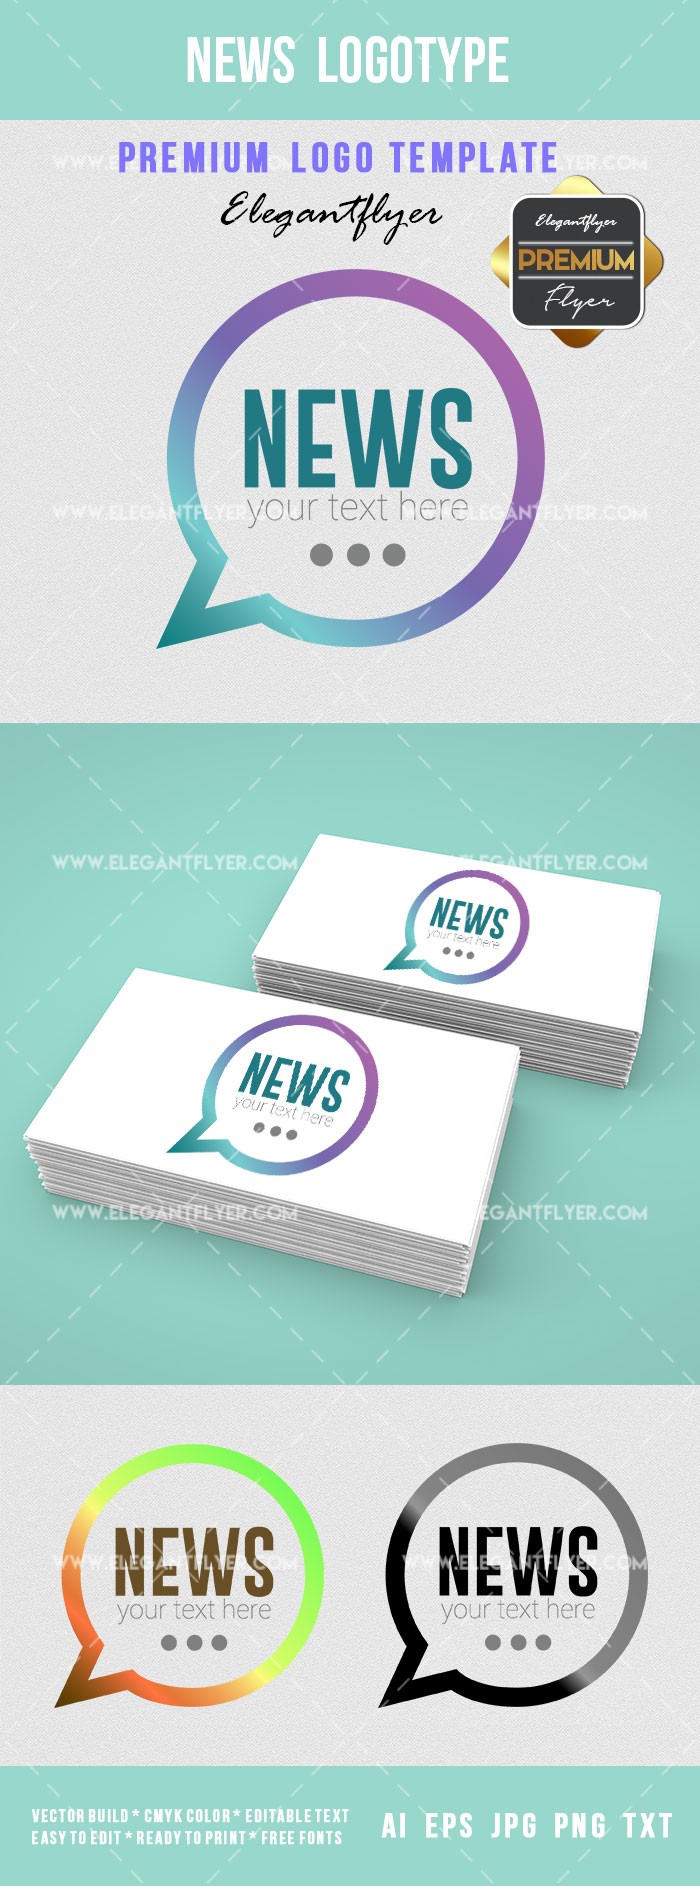 News Logotype by ElegantFlyer